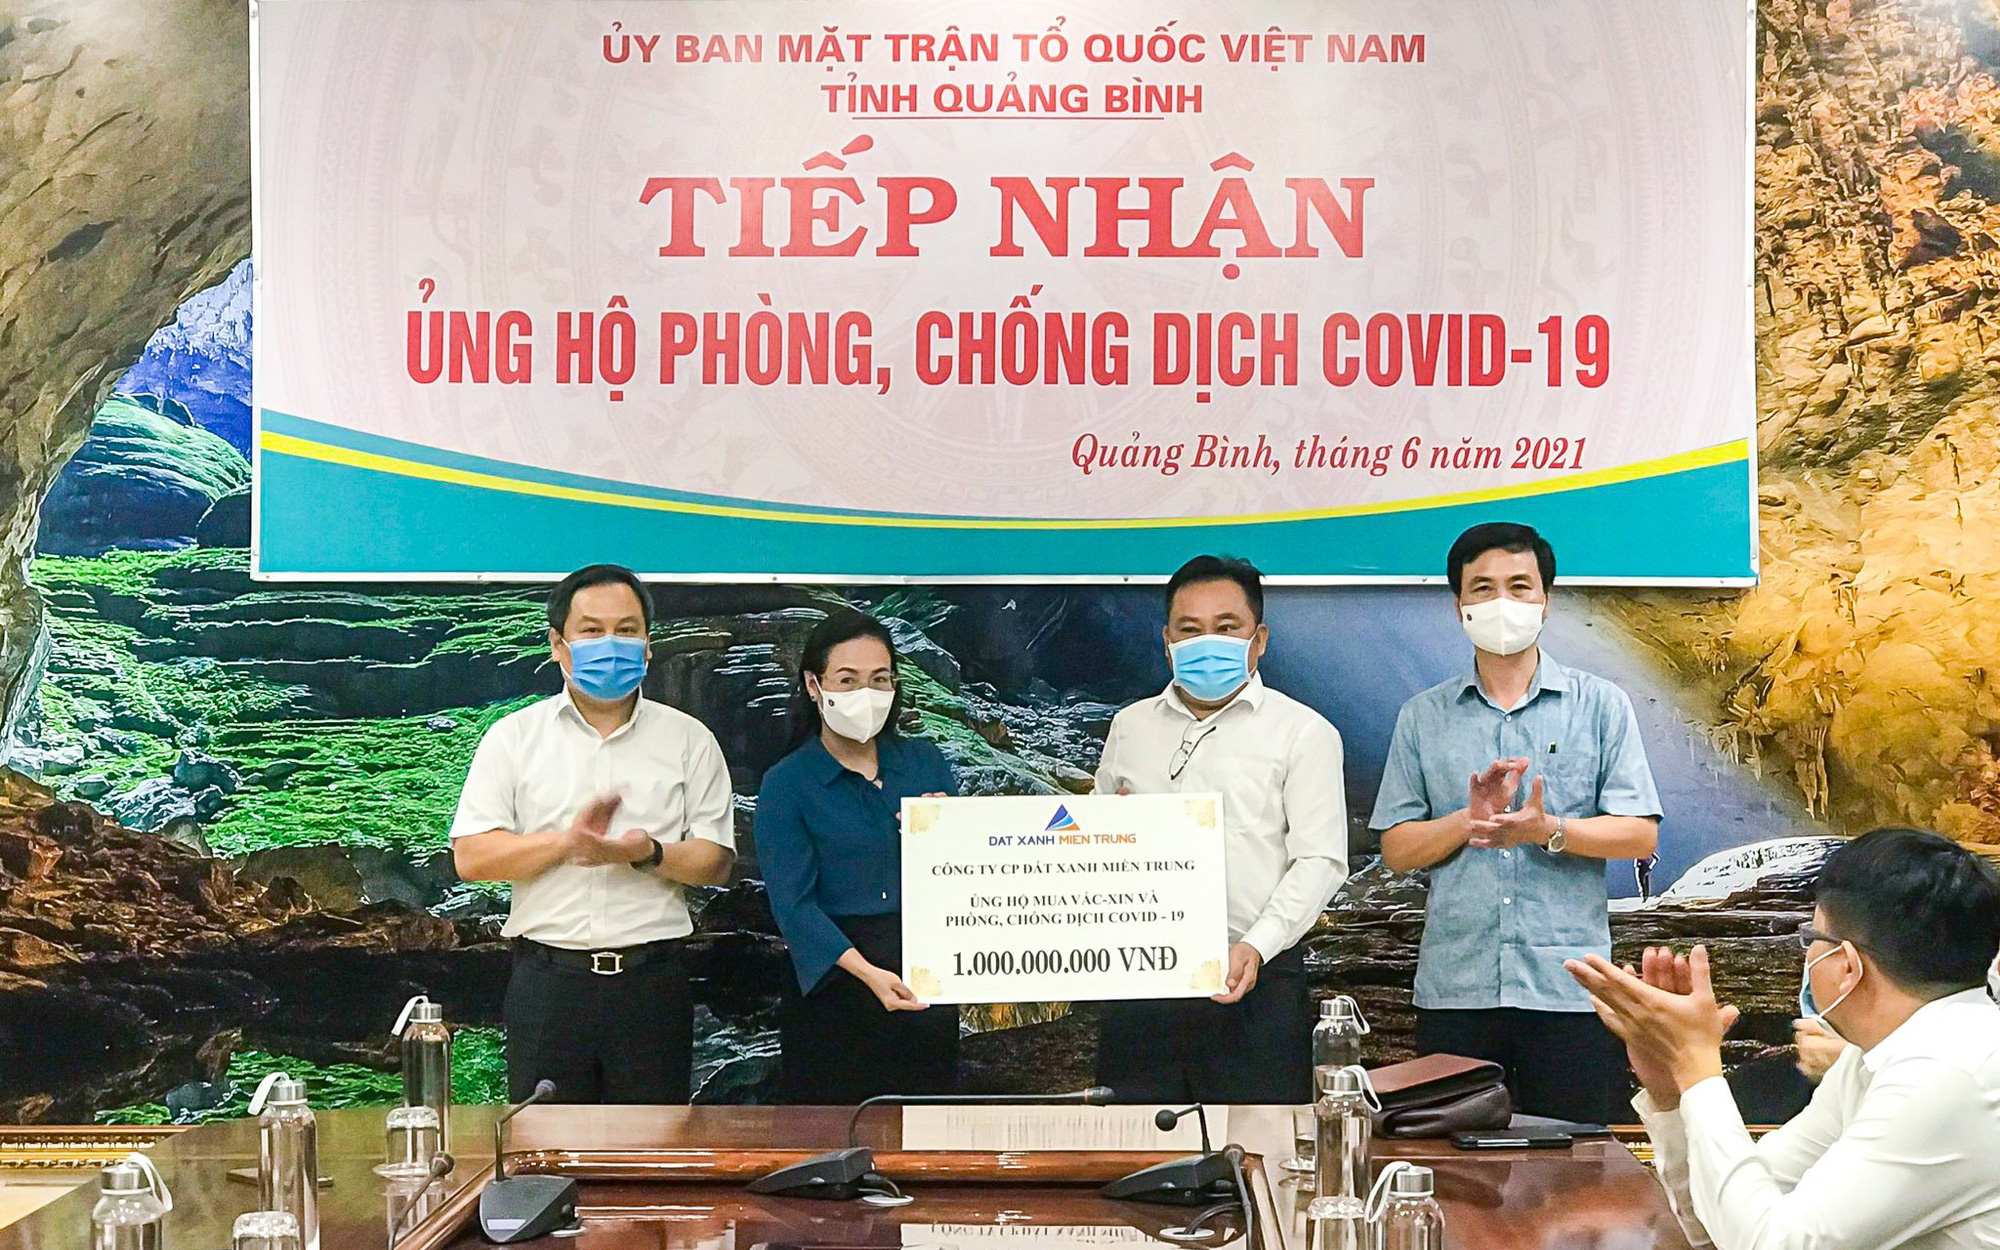 Đất Xanh Miền Trung hỗ trợ Quảng Bình 1 tỷ đồng, nâng tổng số tiền ủng hộ quỹ vaccine lên 2 tỷ đồng